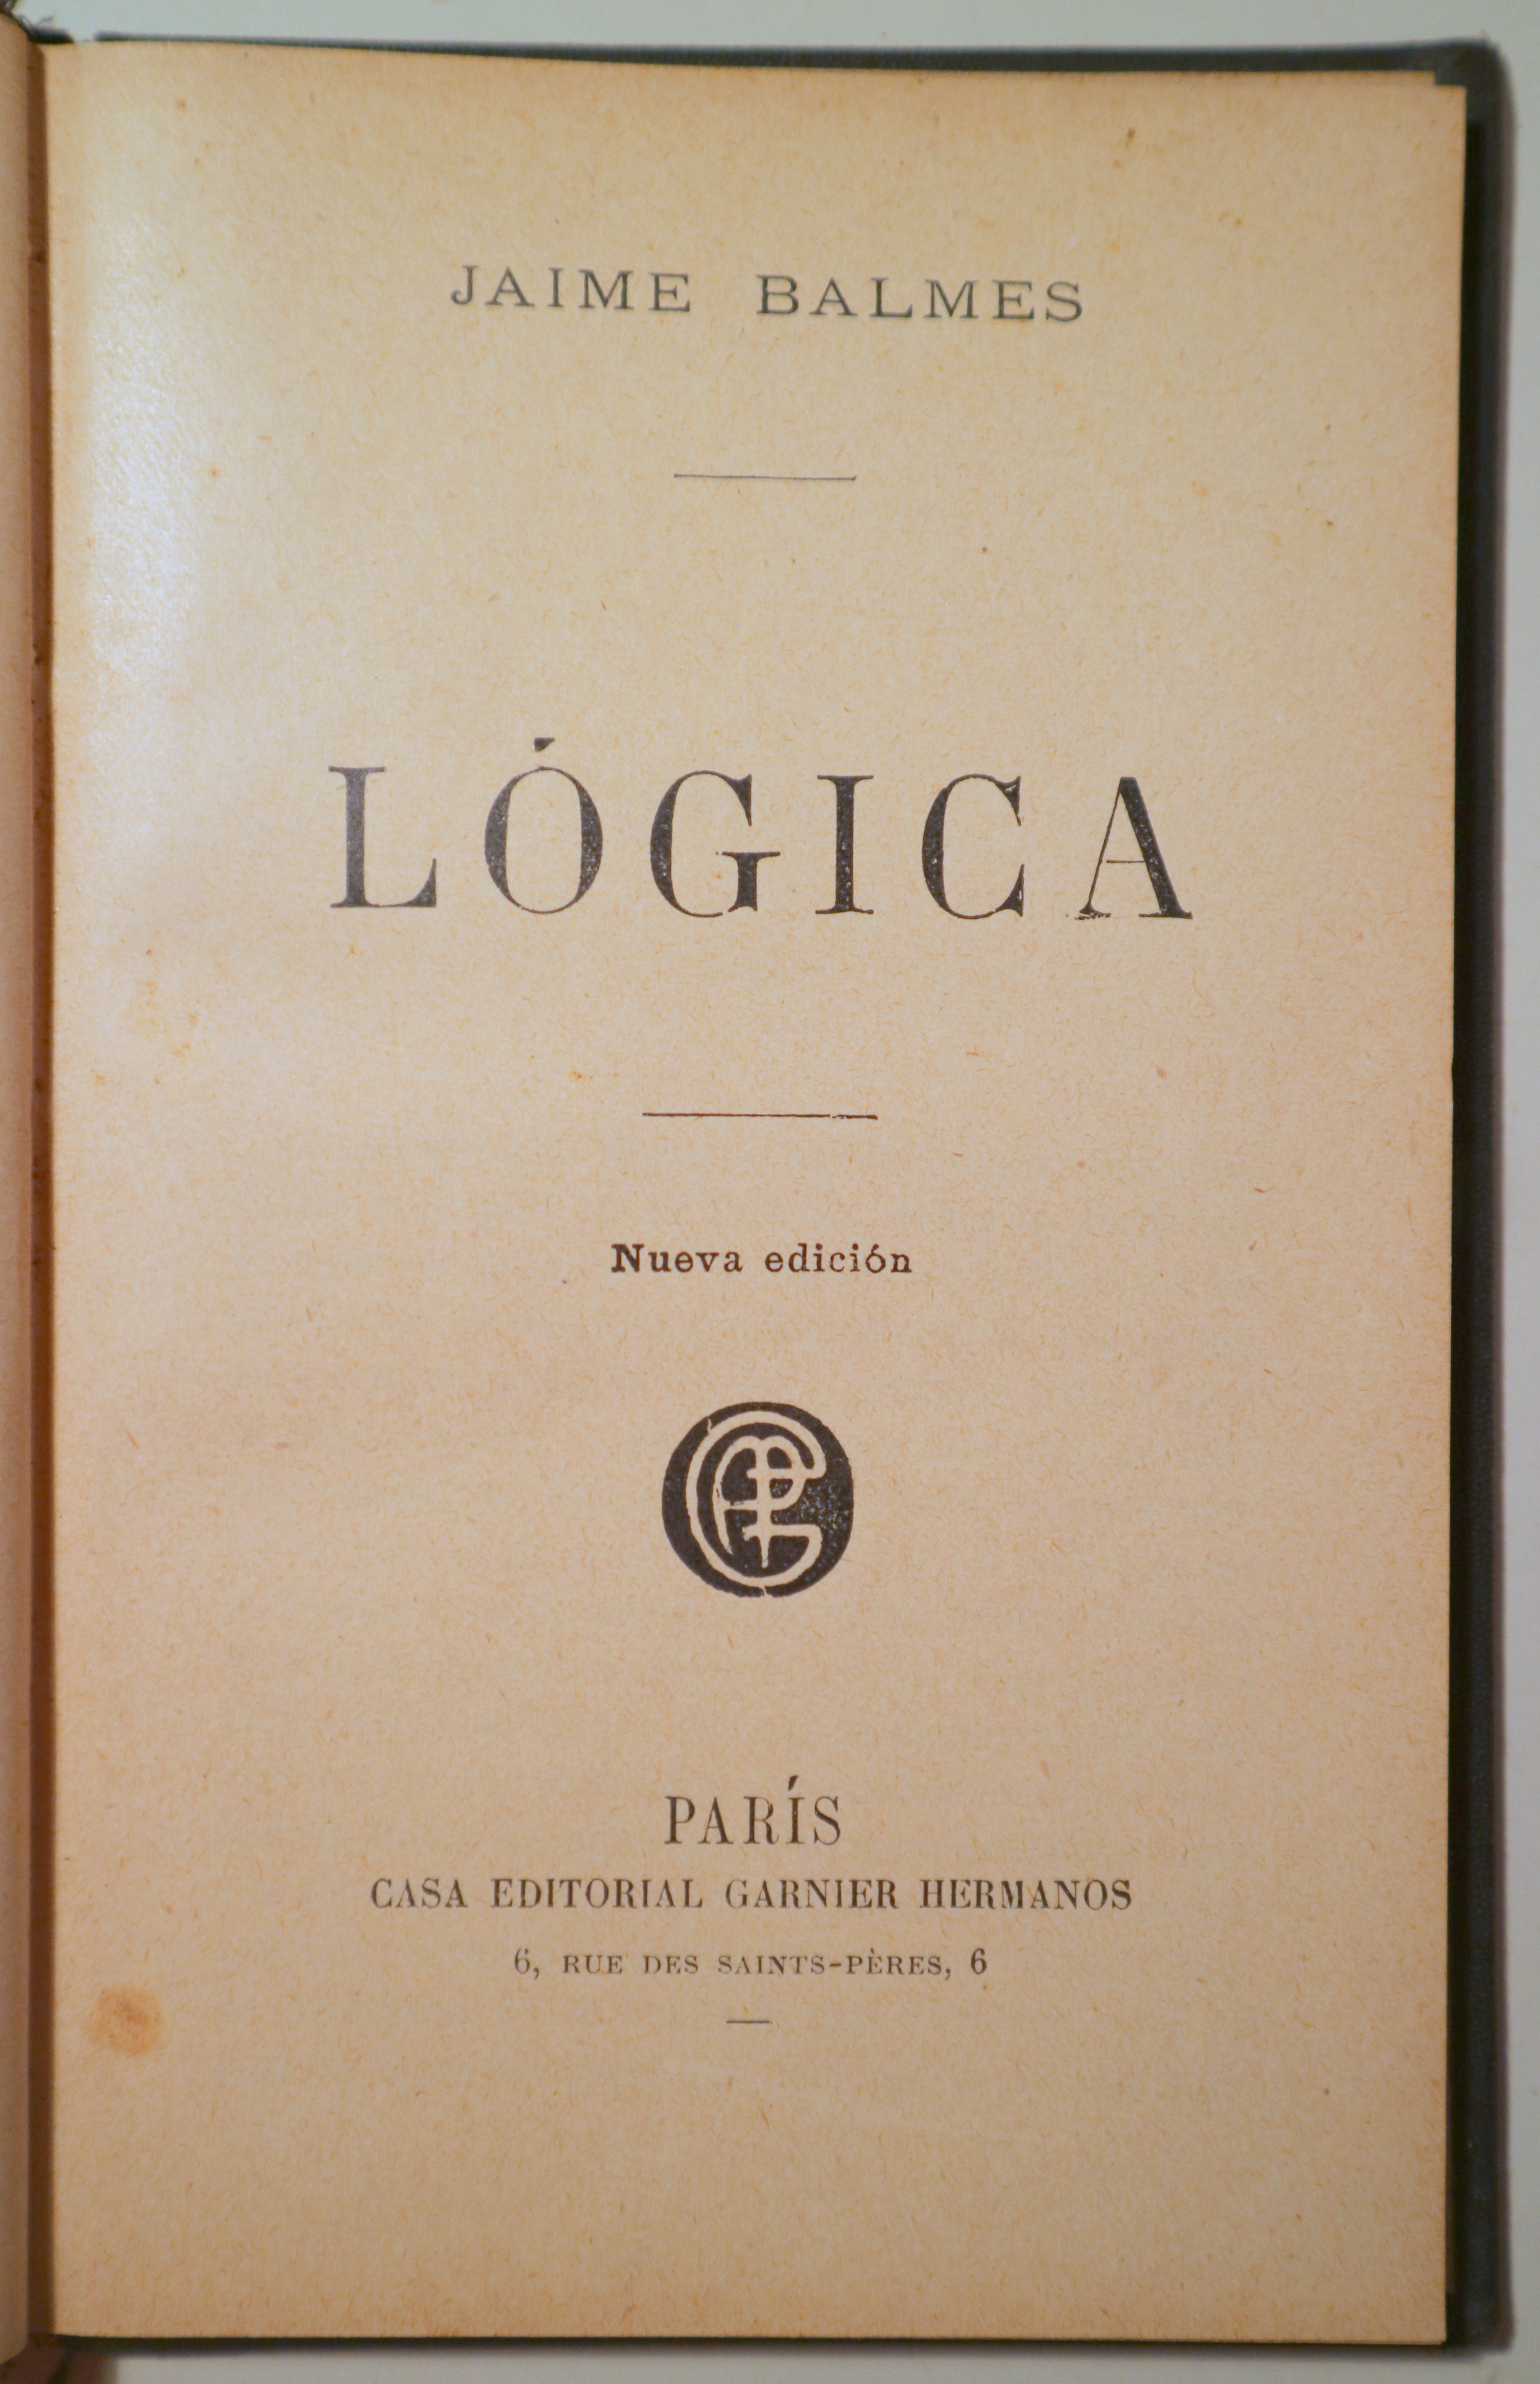 LÓGICA - Paris s/f - Nueva edición